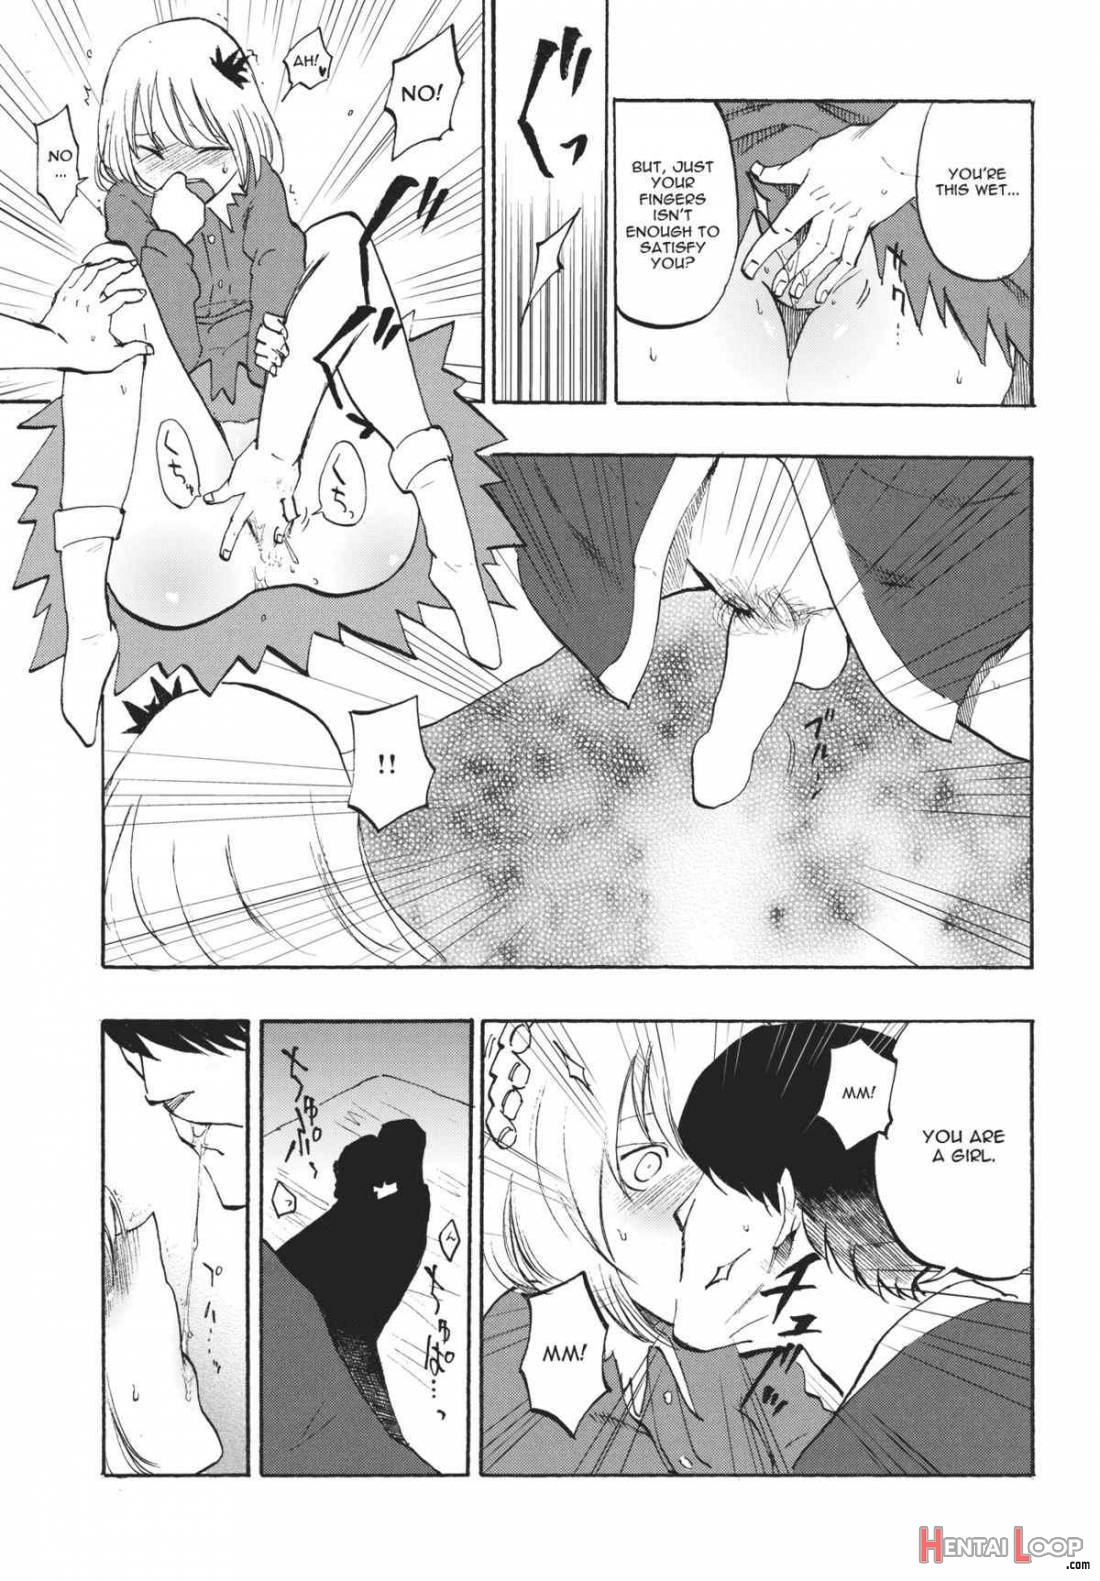 Ochiba no Yukue page 8